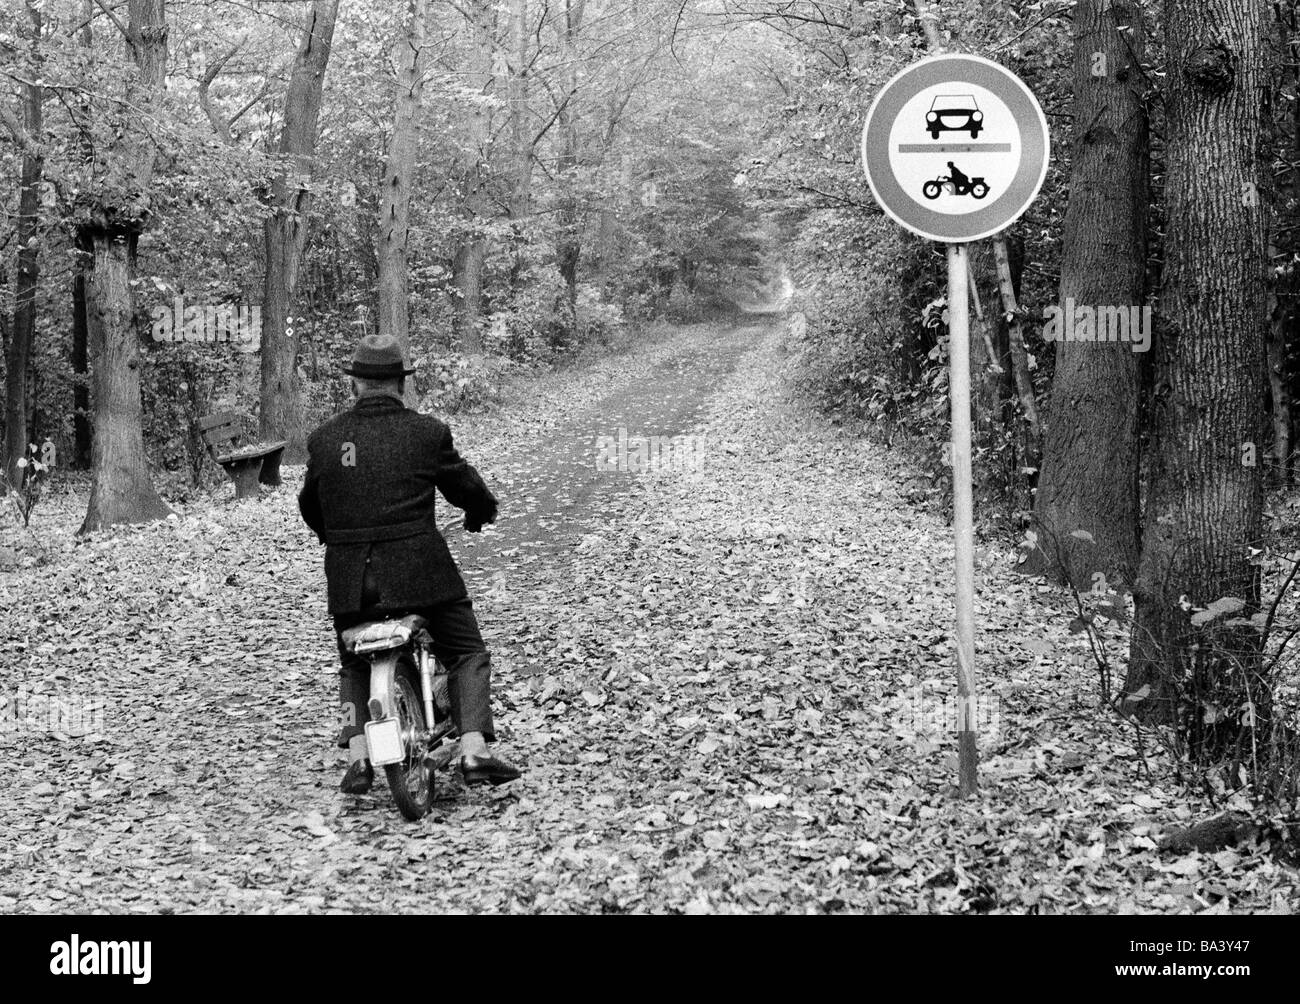 70er Jahre, schwarz / weiß Foto, Herbst, Wald, Wald, Straße, Verbotszeichen, kein Eintrag für Autos und Motorräder, dennoch ein älterer Mann auf einem Moped durchläuft, im Alter von 60 bis 70 Jahre, D-Bottrop, D-Bottrop-Kirchhellen, Grafenwald, Ruhrgebiet, Nordrhein-Westfalen Stockfoto